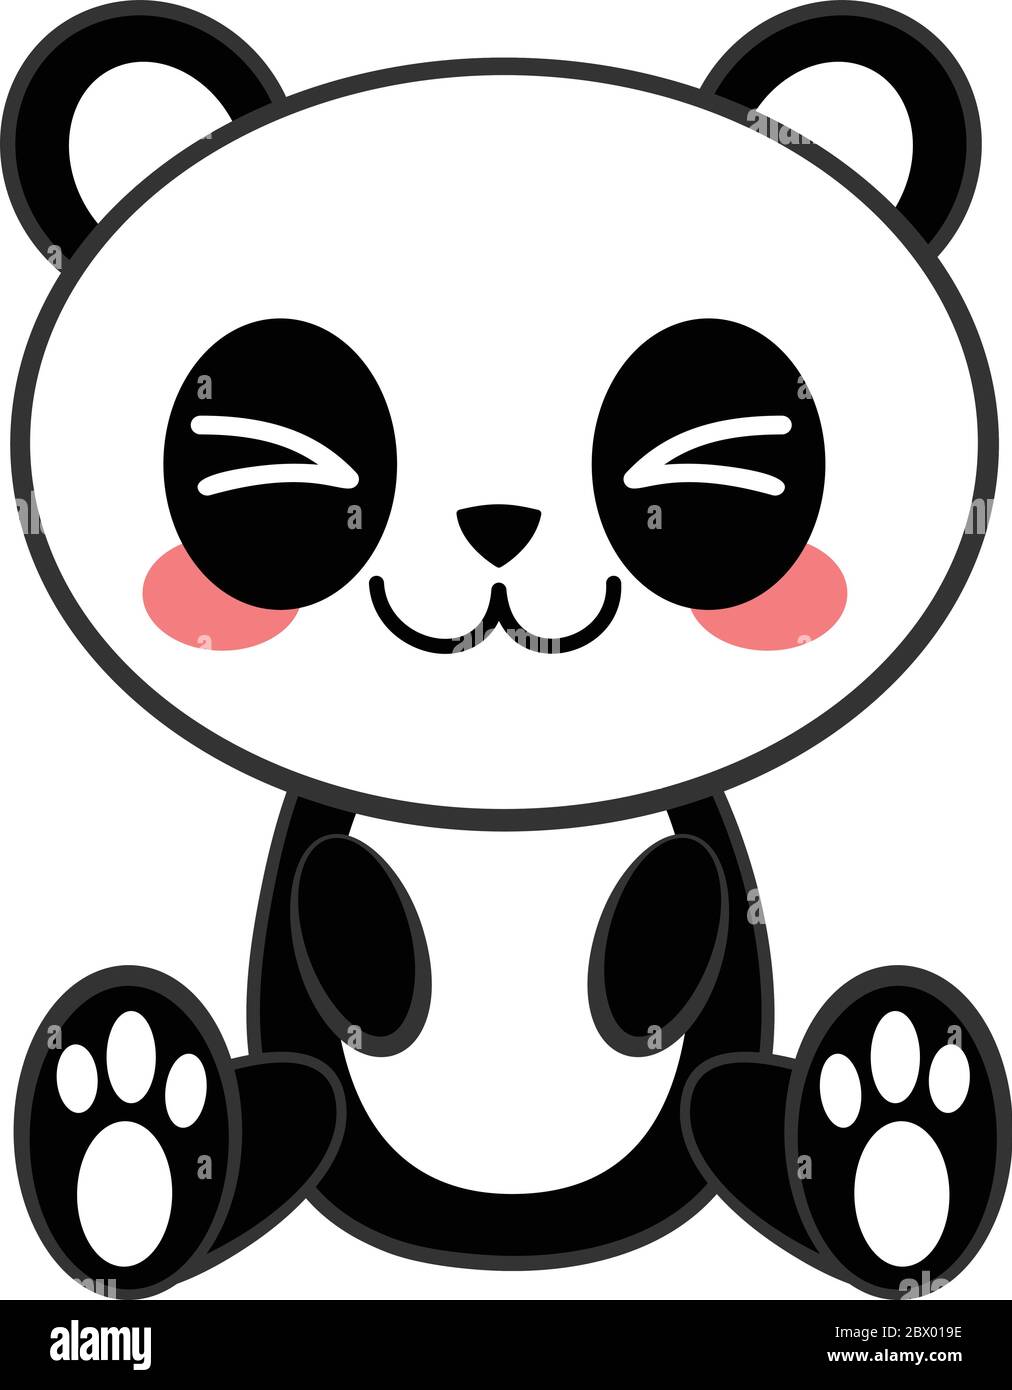 Kawaii Panda- A Cartoon Illustration of a Kawaii Panda Stock Vector Image &  Art - Alamy